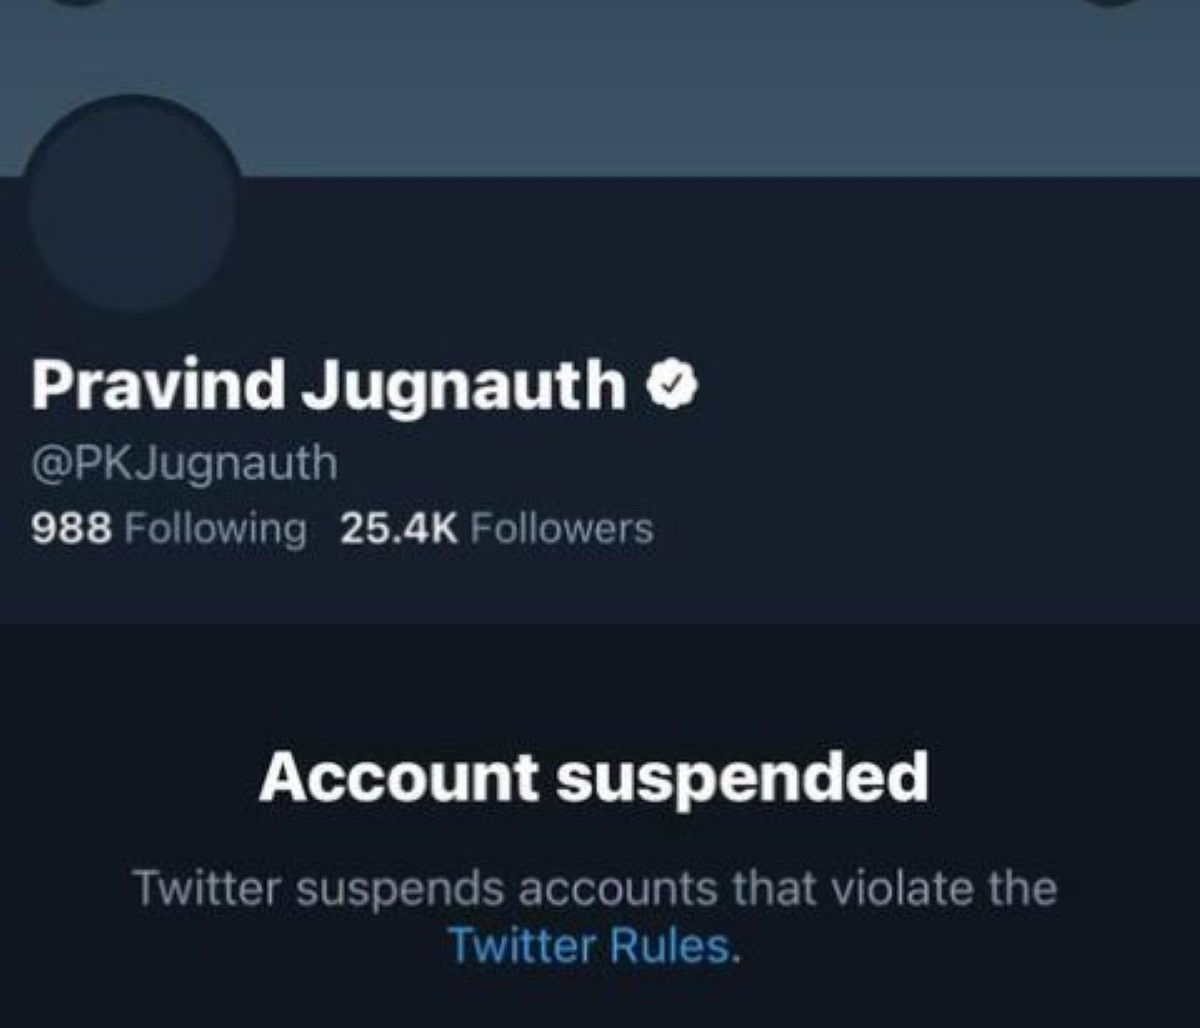 Le compte officiel de Pravind Jugnauth sur Twitter est suspendu